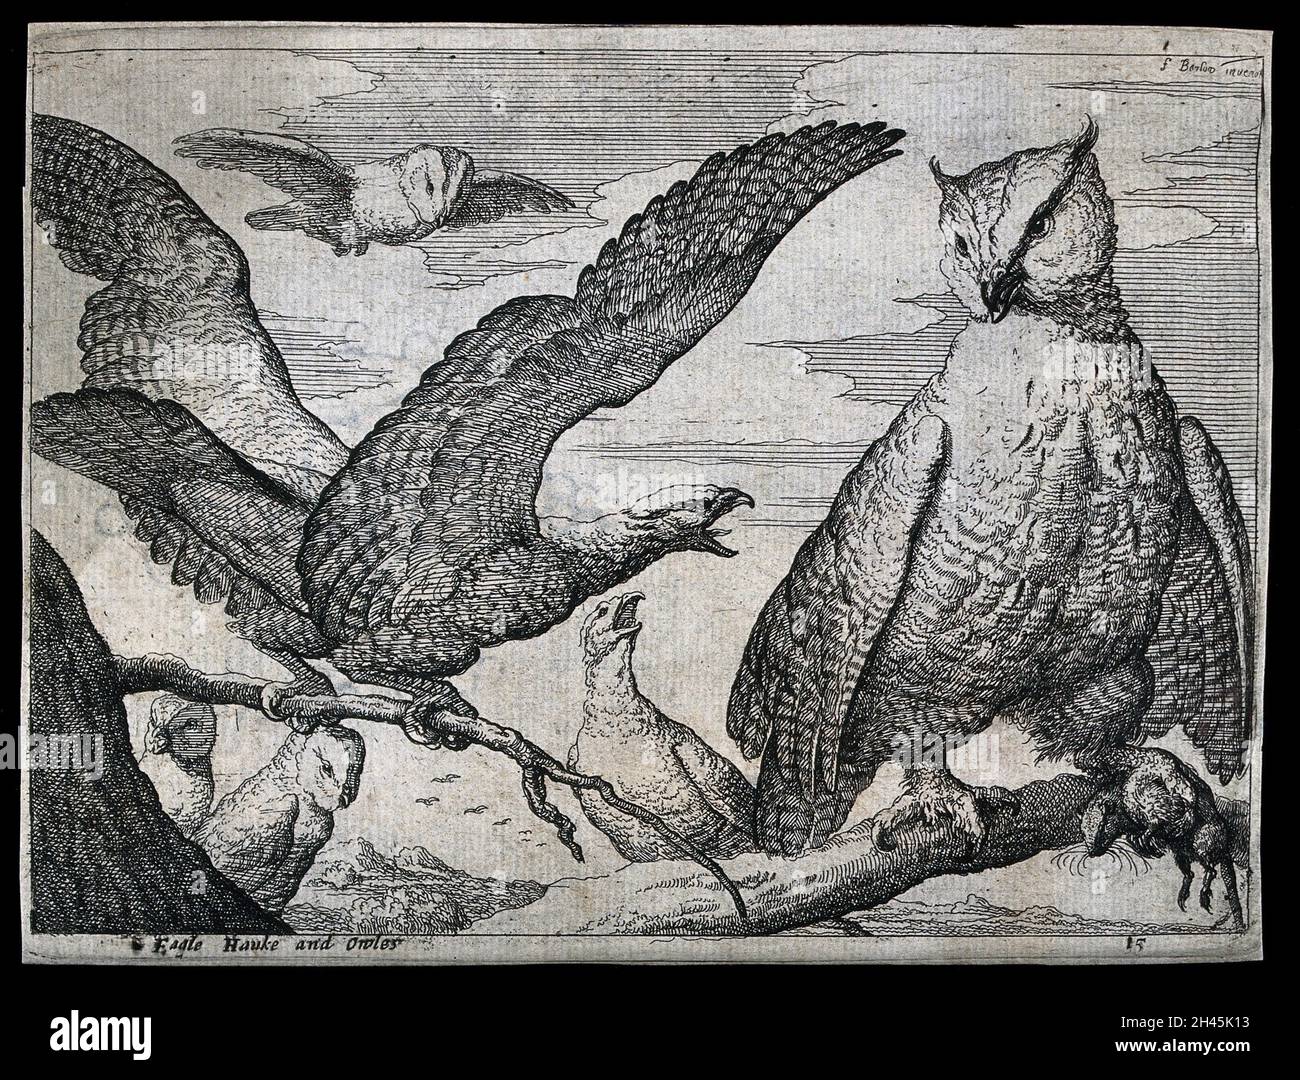 Ein Adler schreit auf eine große Eule. Radierung nach F. Barlow, 17. Jahrhundert. Stockfoto